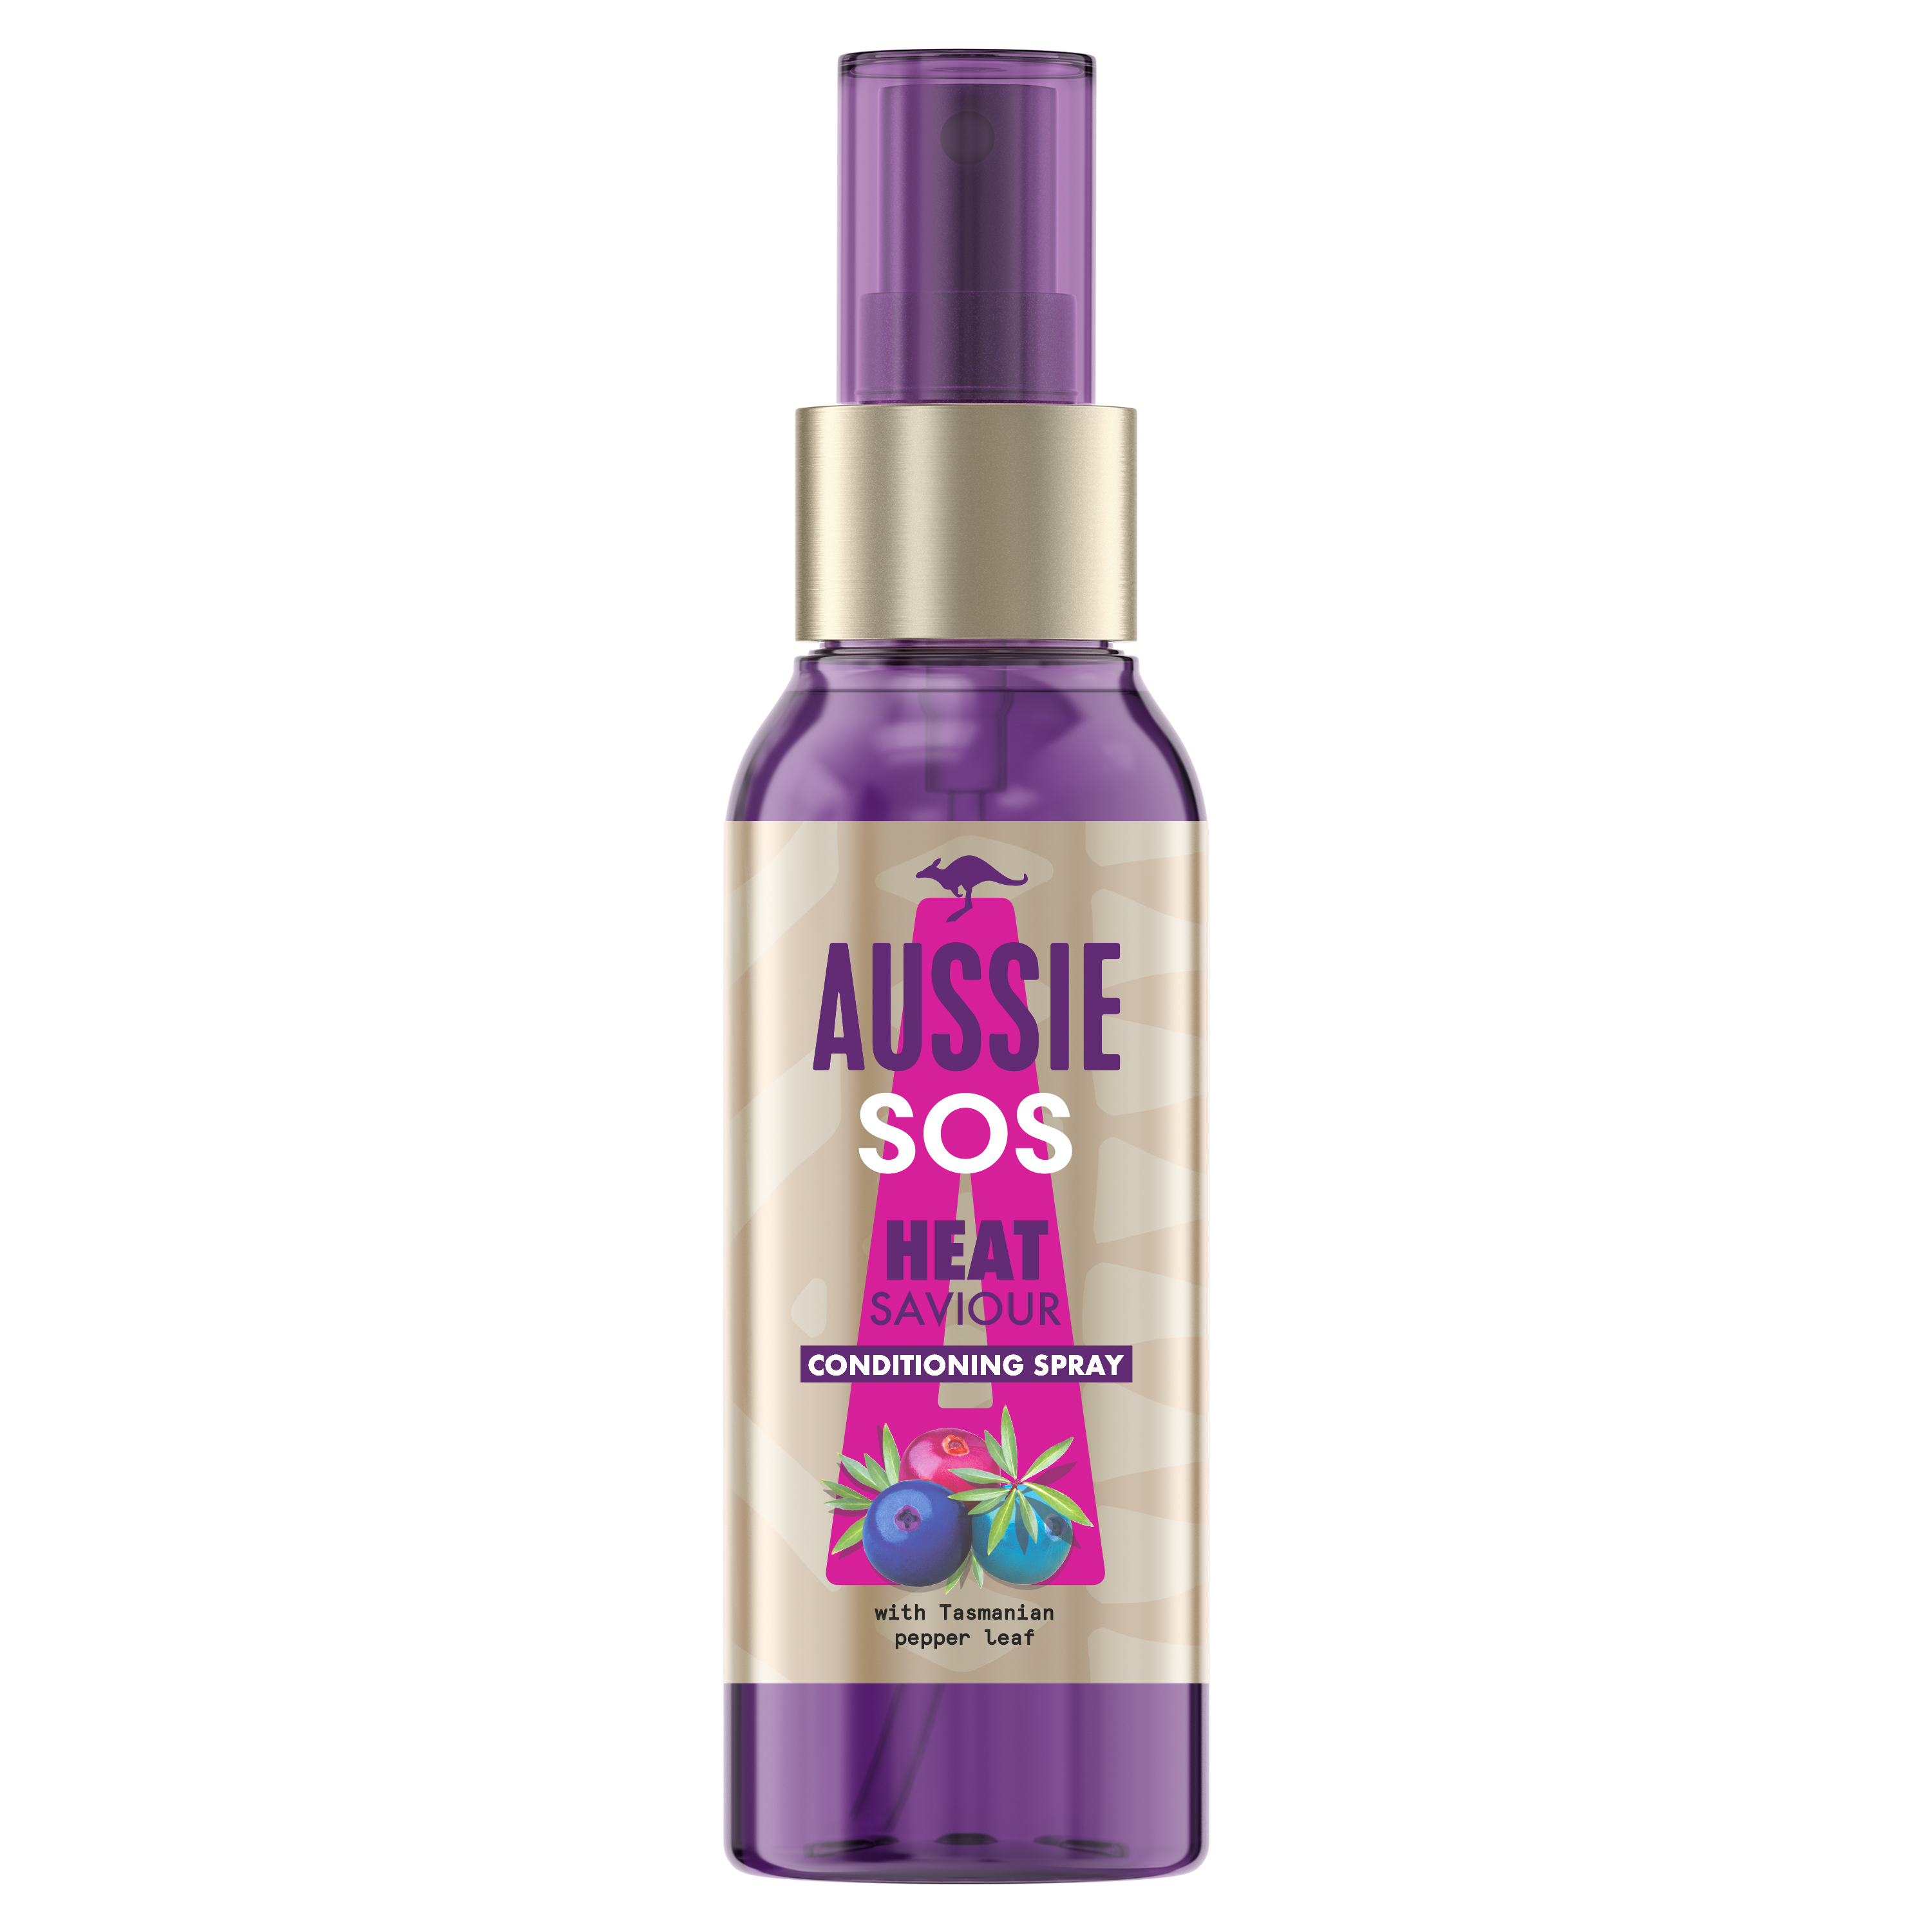 Aussie SOS Instant Heat Saviour Hair Spray